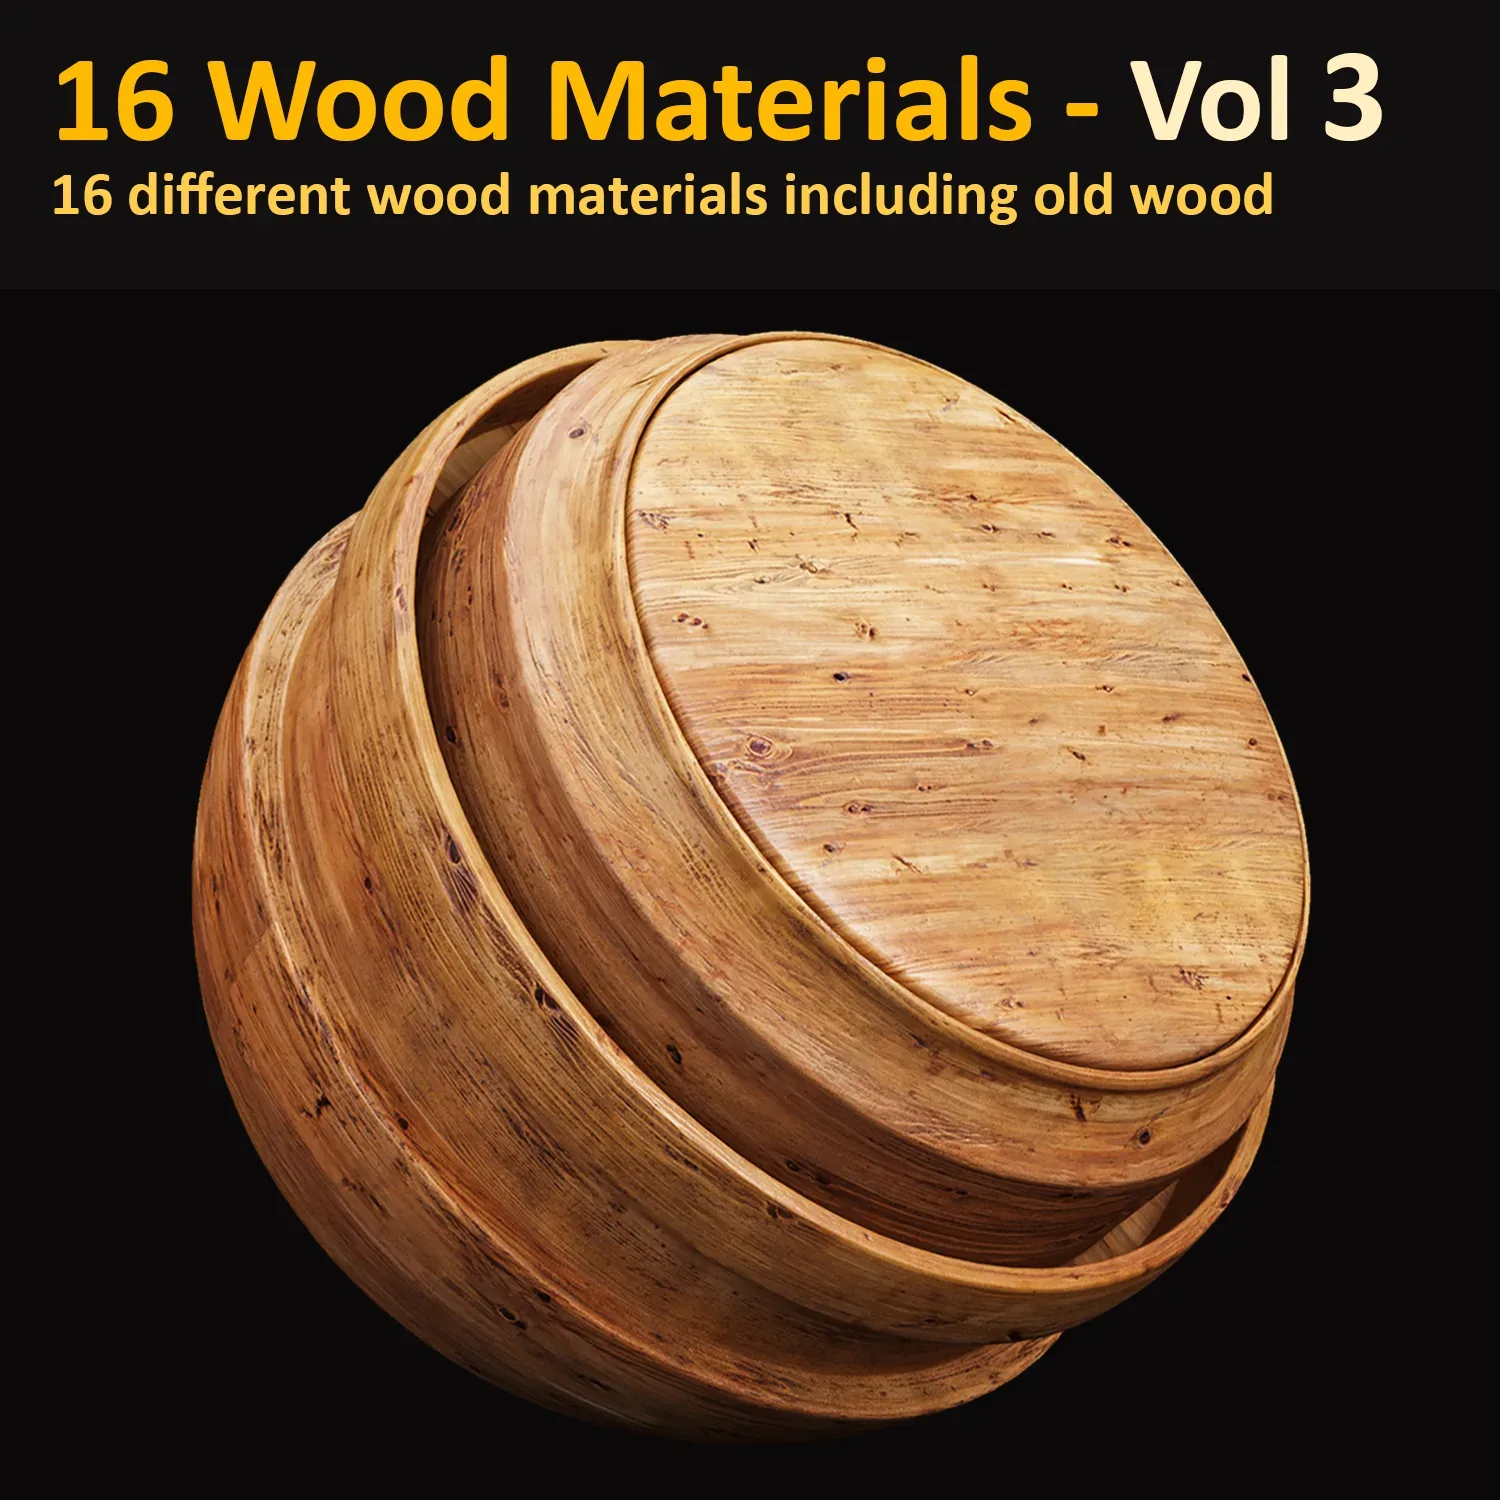 16 Wood Materials Vol 3